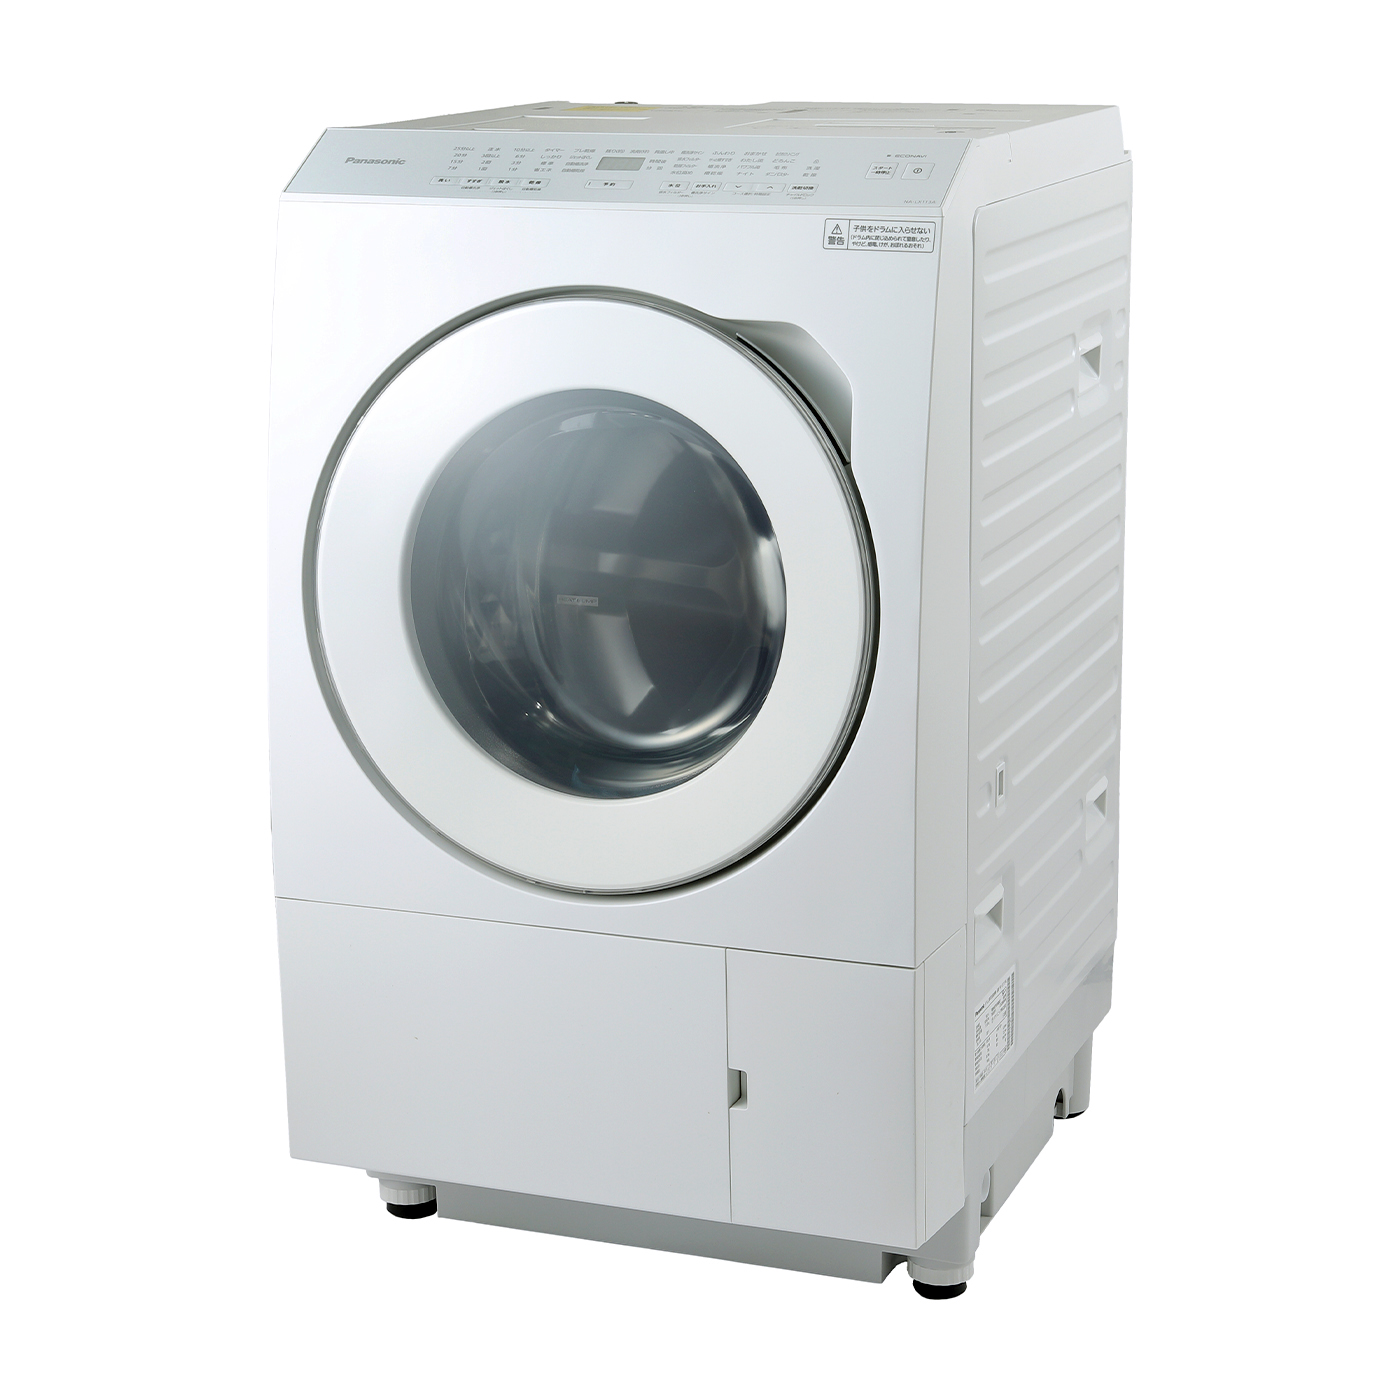 超熱  日立 電気洗濯乾燥機 熱乾燥搭載  たのメル便 洗濯機